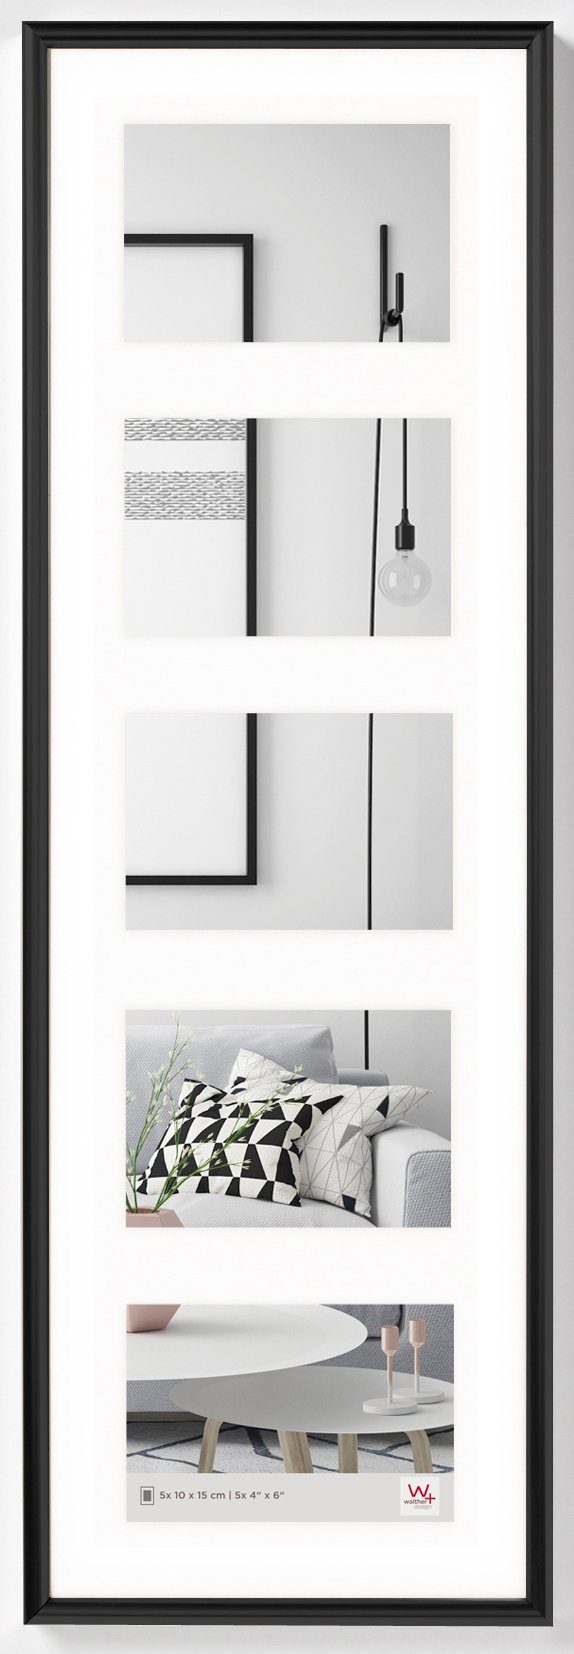 Walther Design Galerierahmen Kunststoff-Galerierahmen GALERIA für 5 Fotos im Format 10x15 cm schwarz